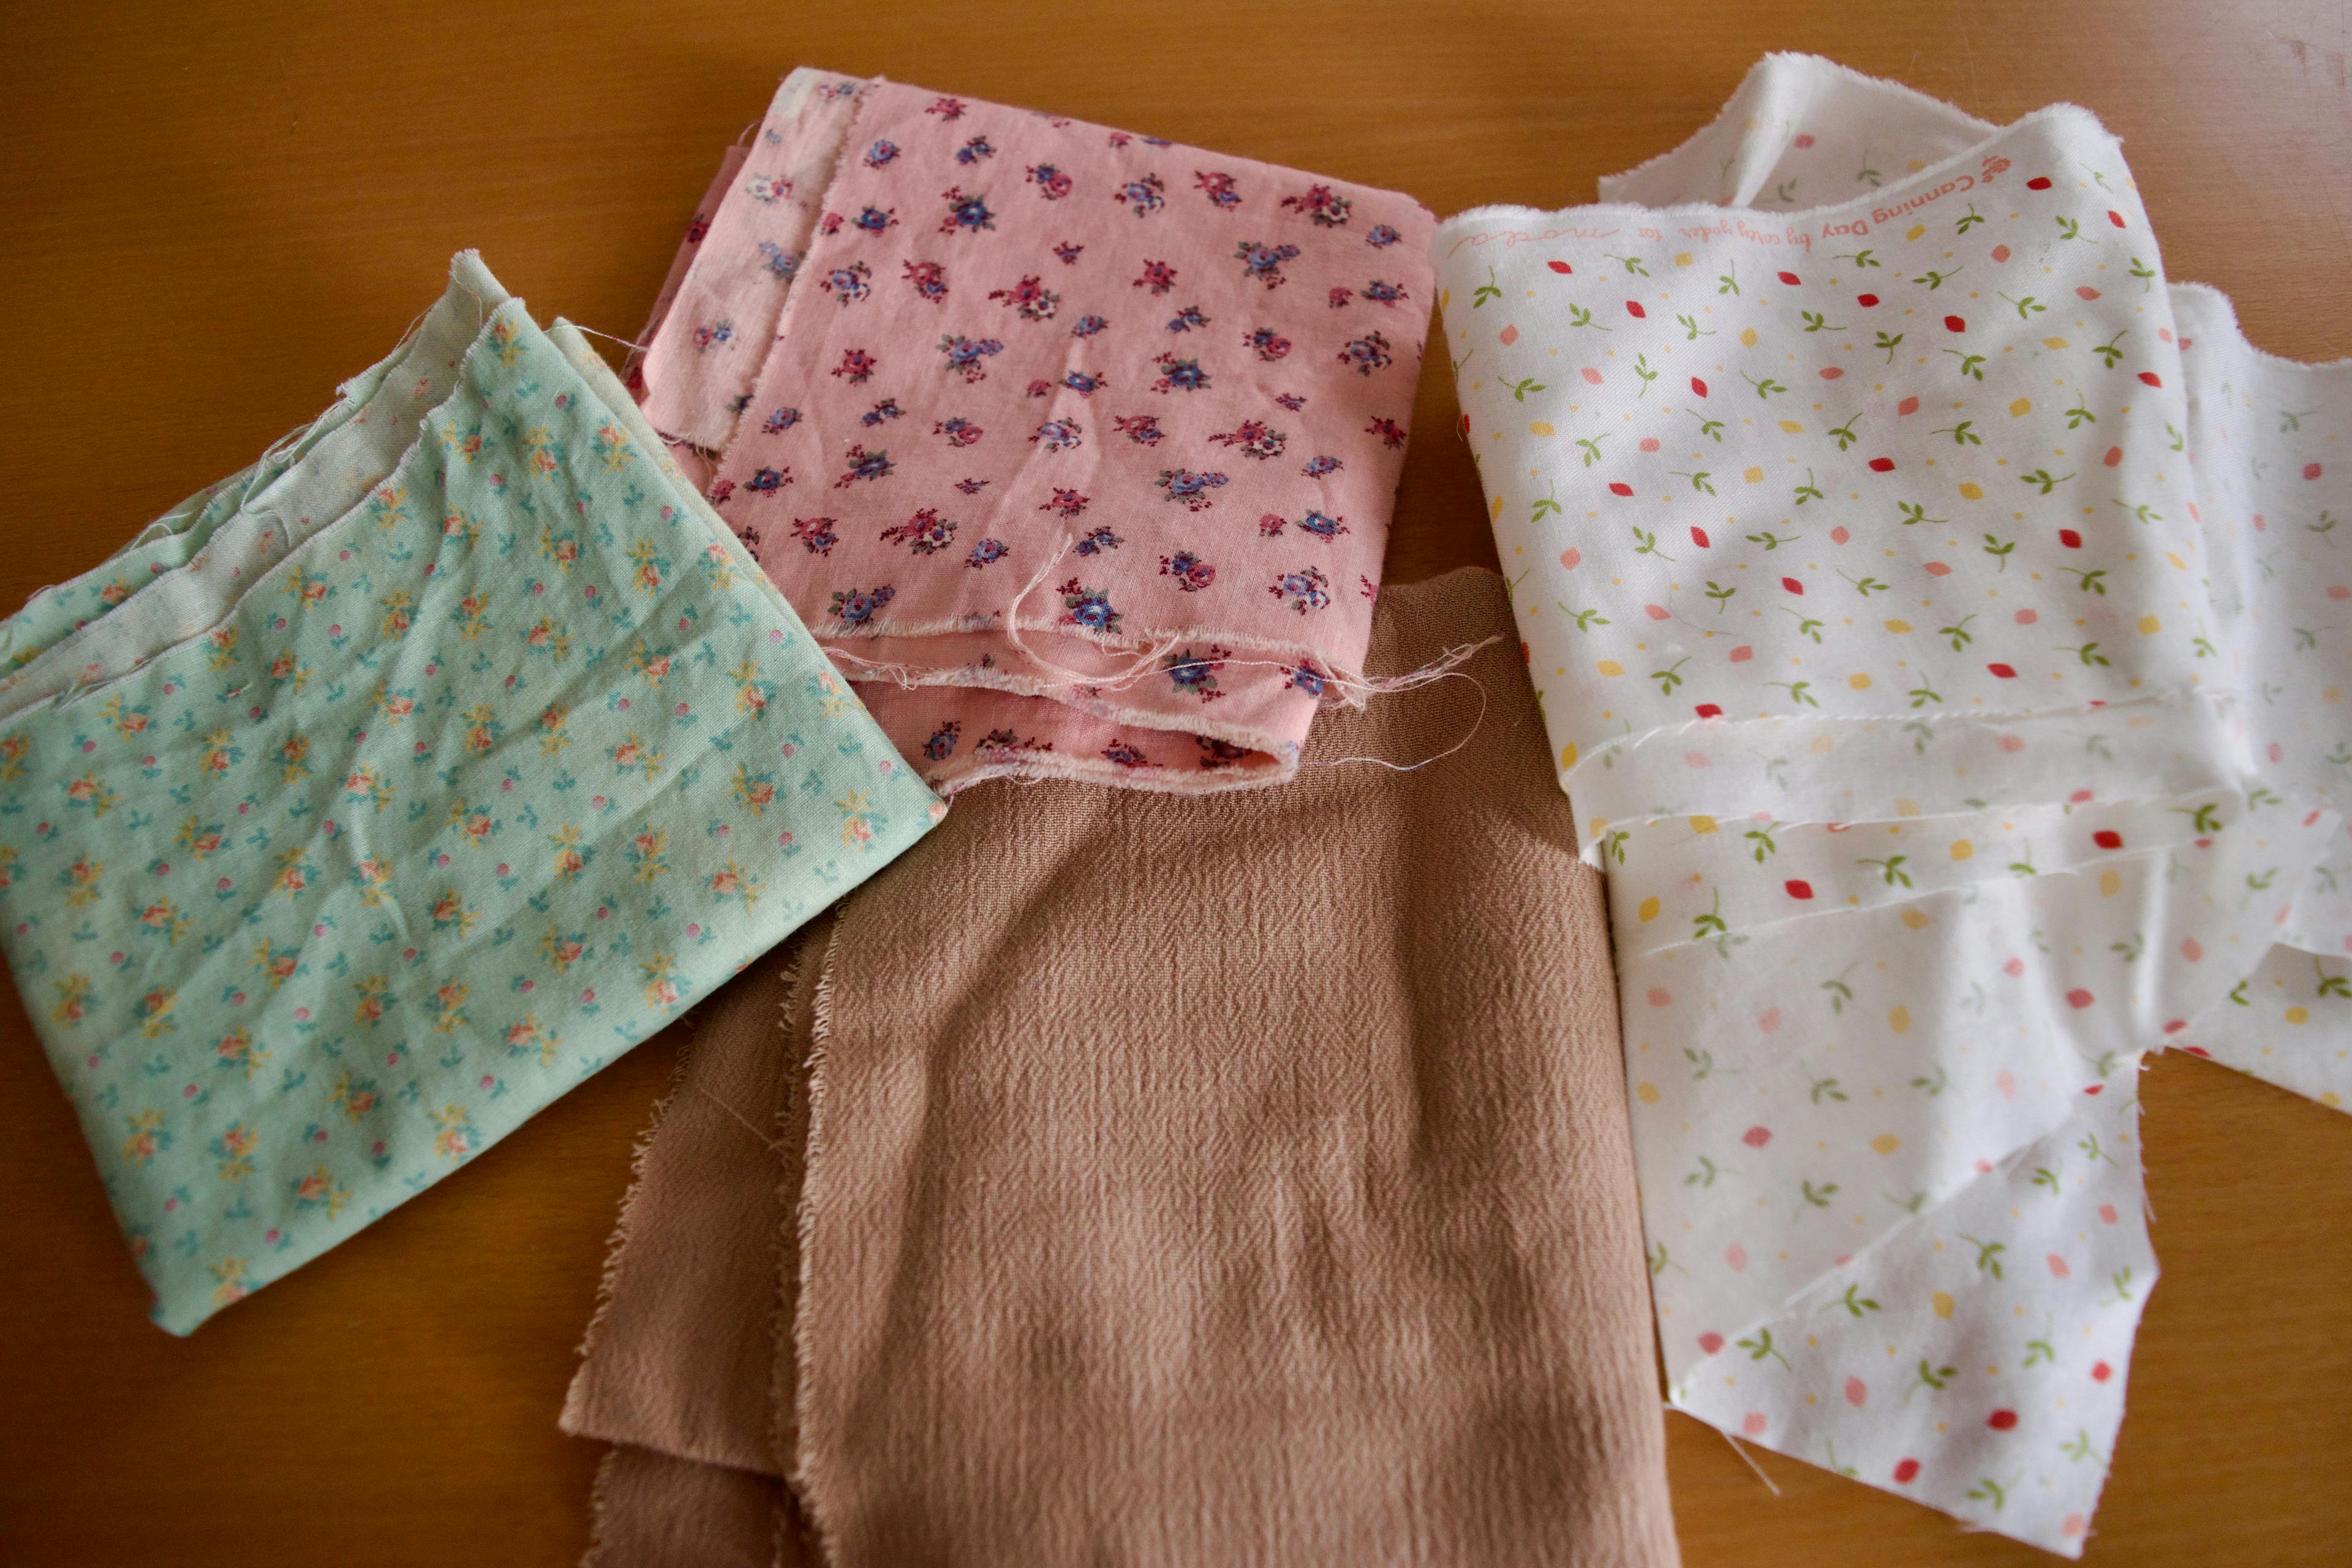 The four chosen fabrics.